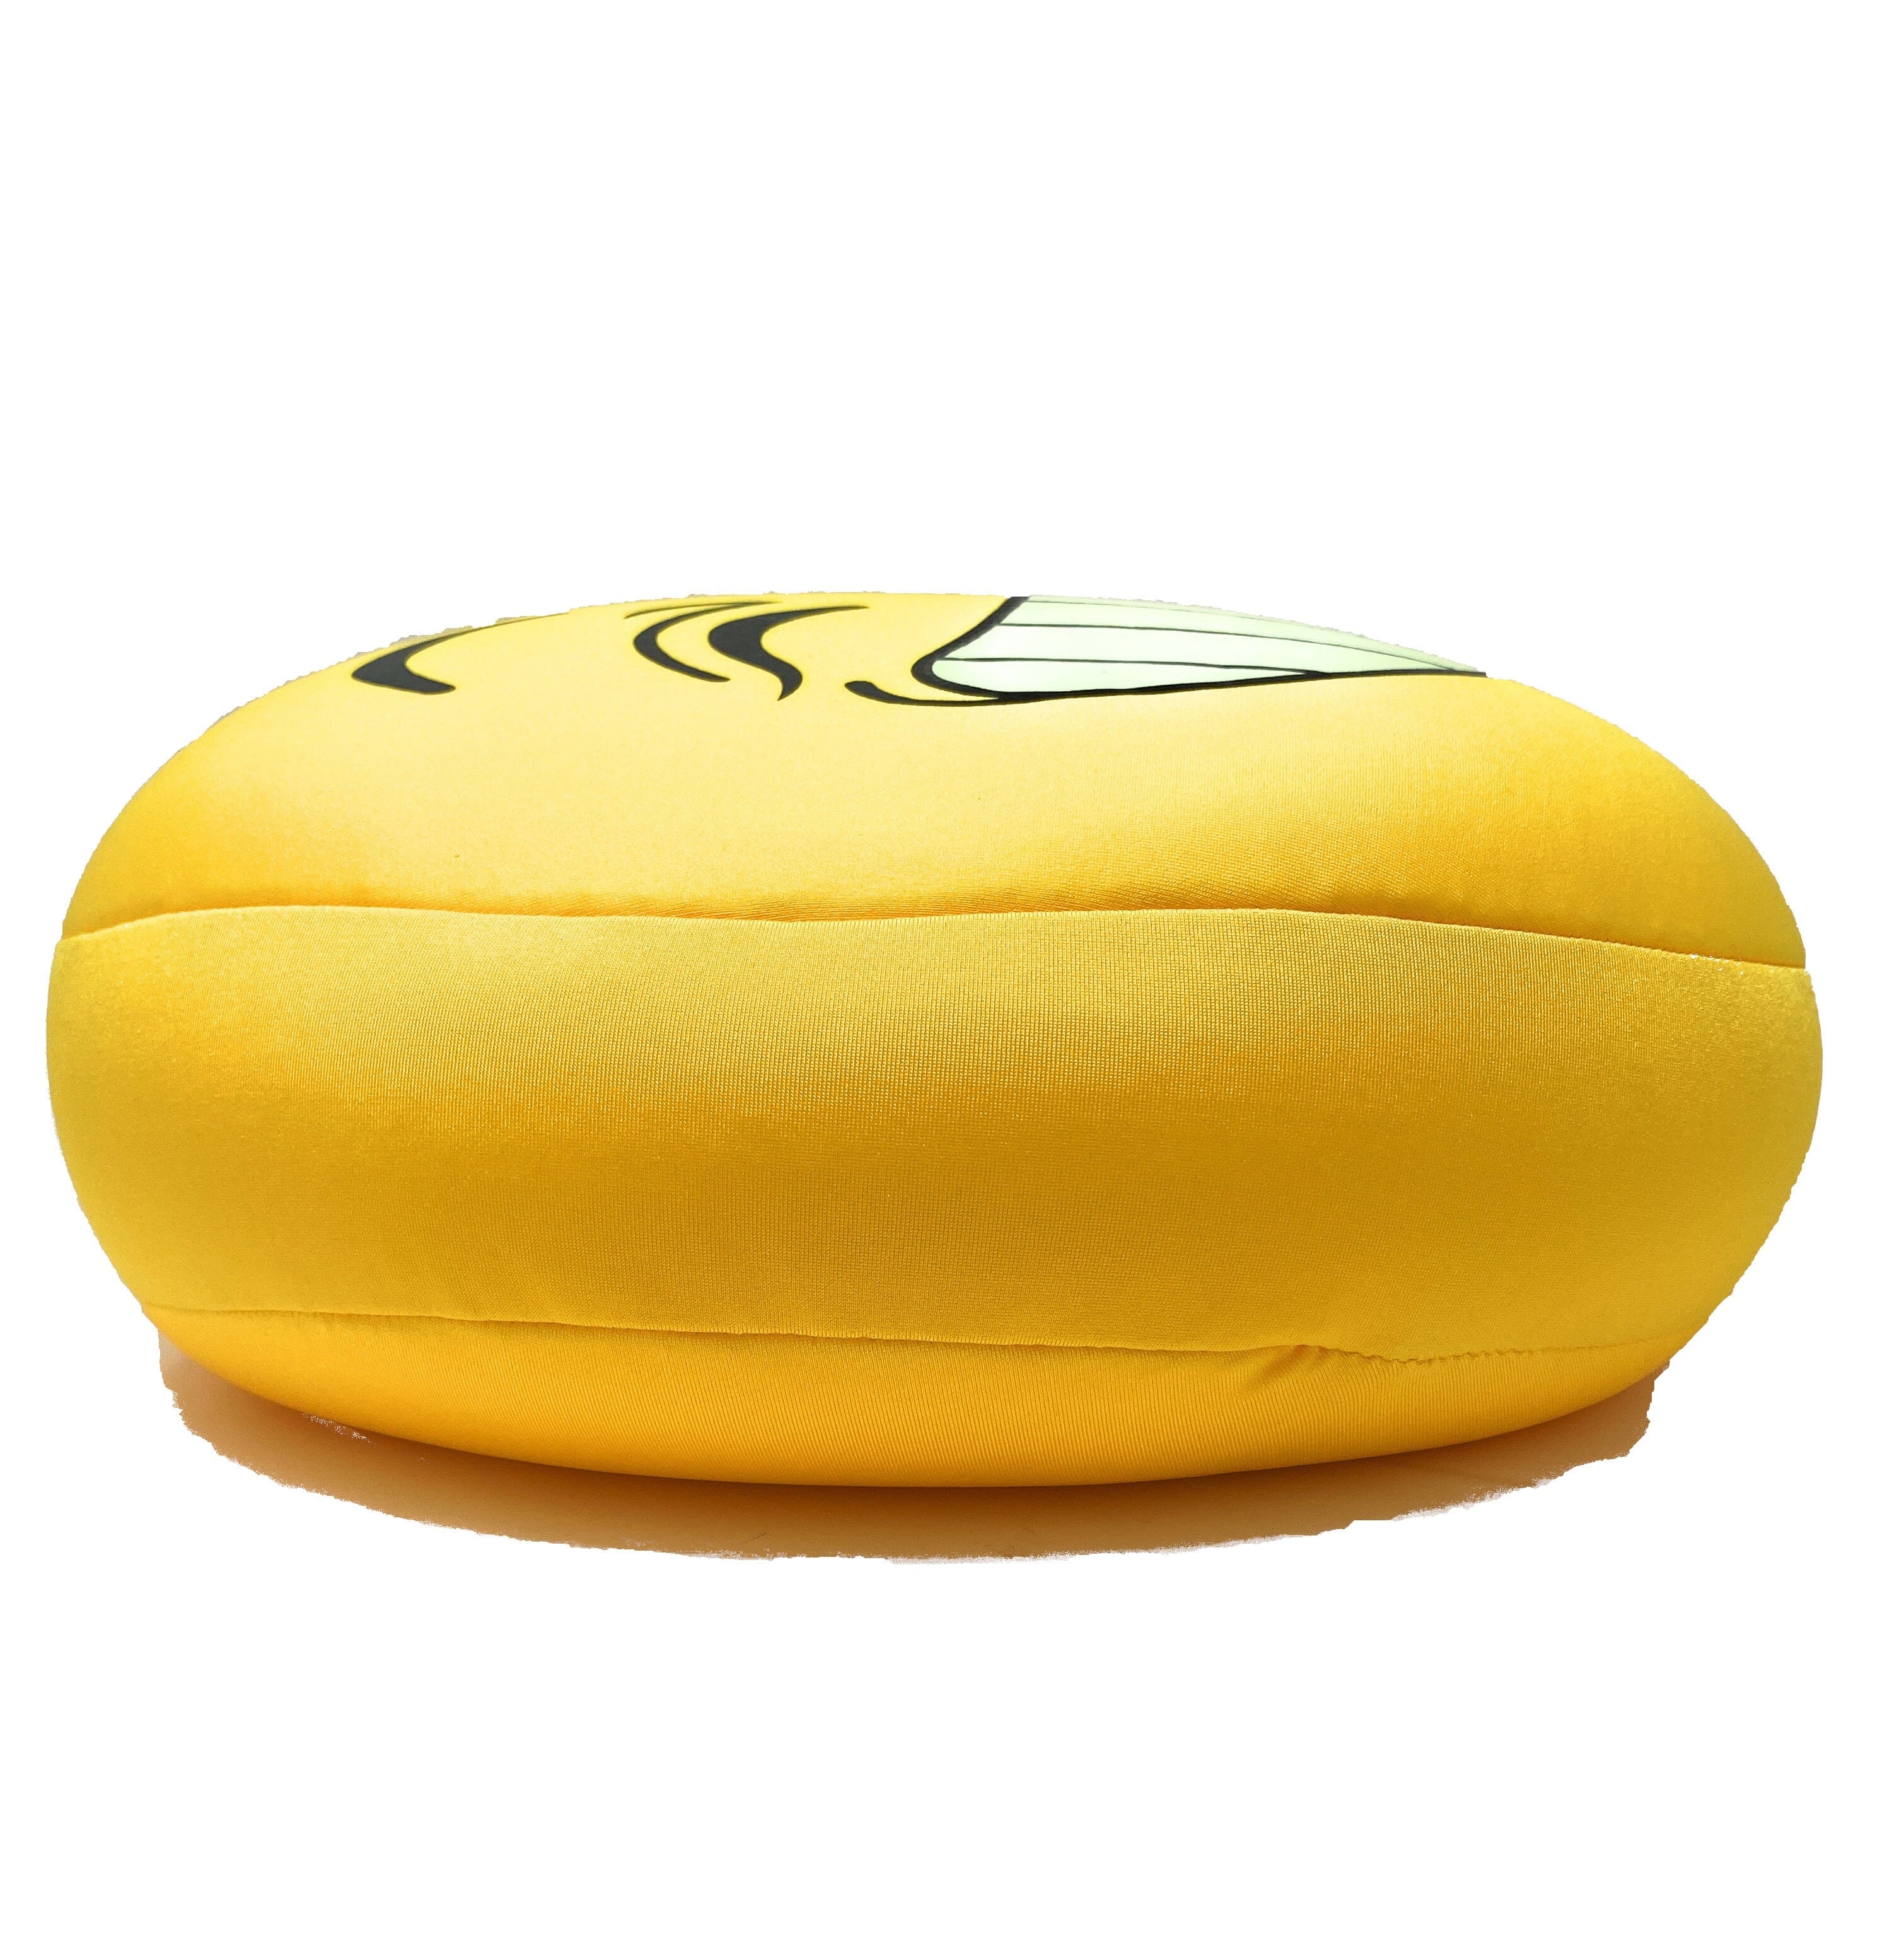 Tache Squishy Crazy Faces Microbead Cushions Throw Pillows - Tache Home Fashion